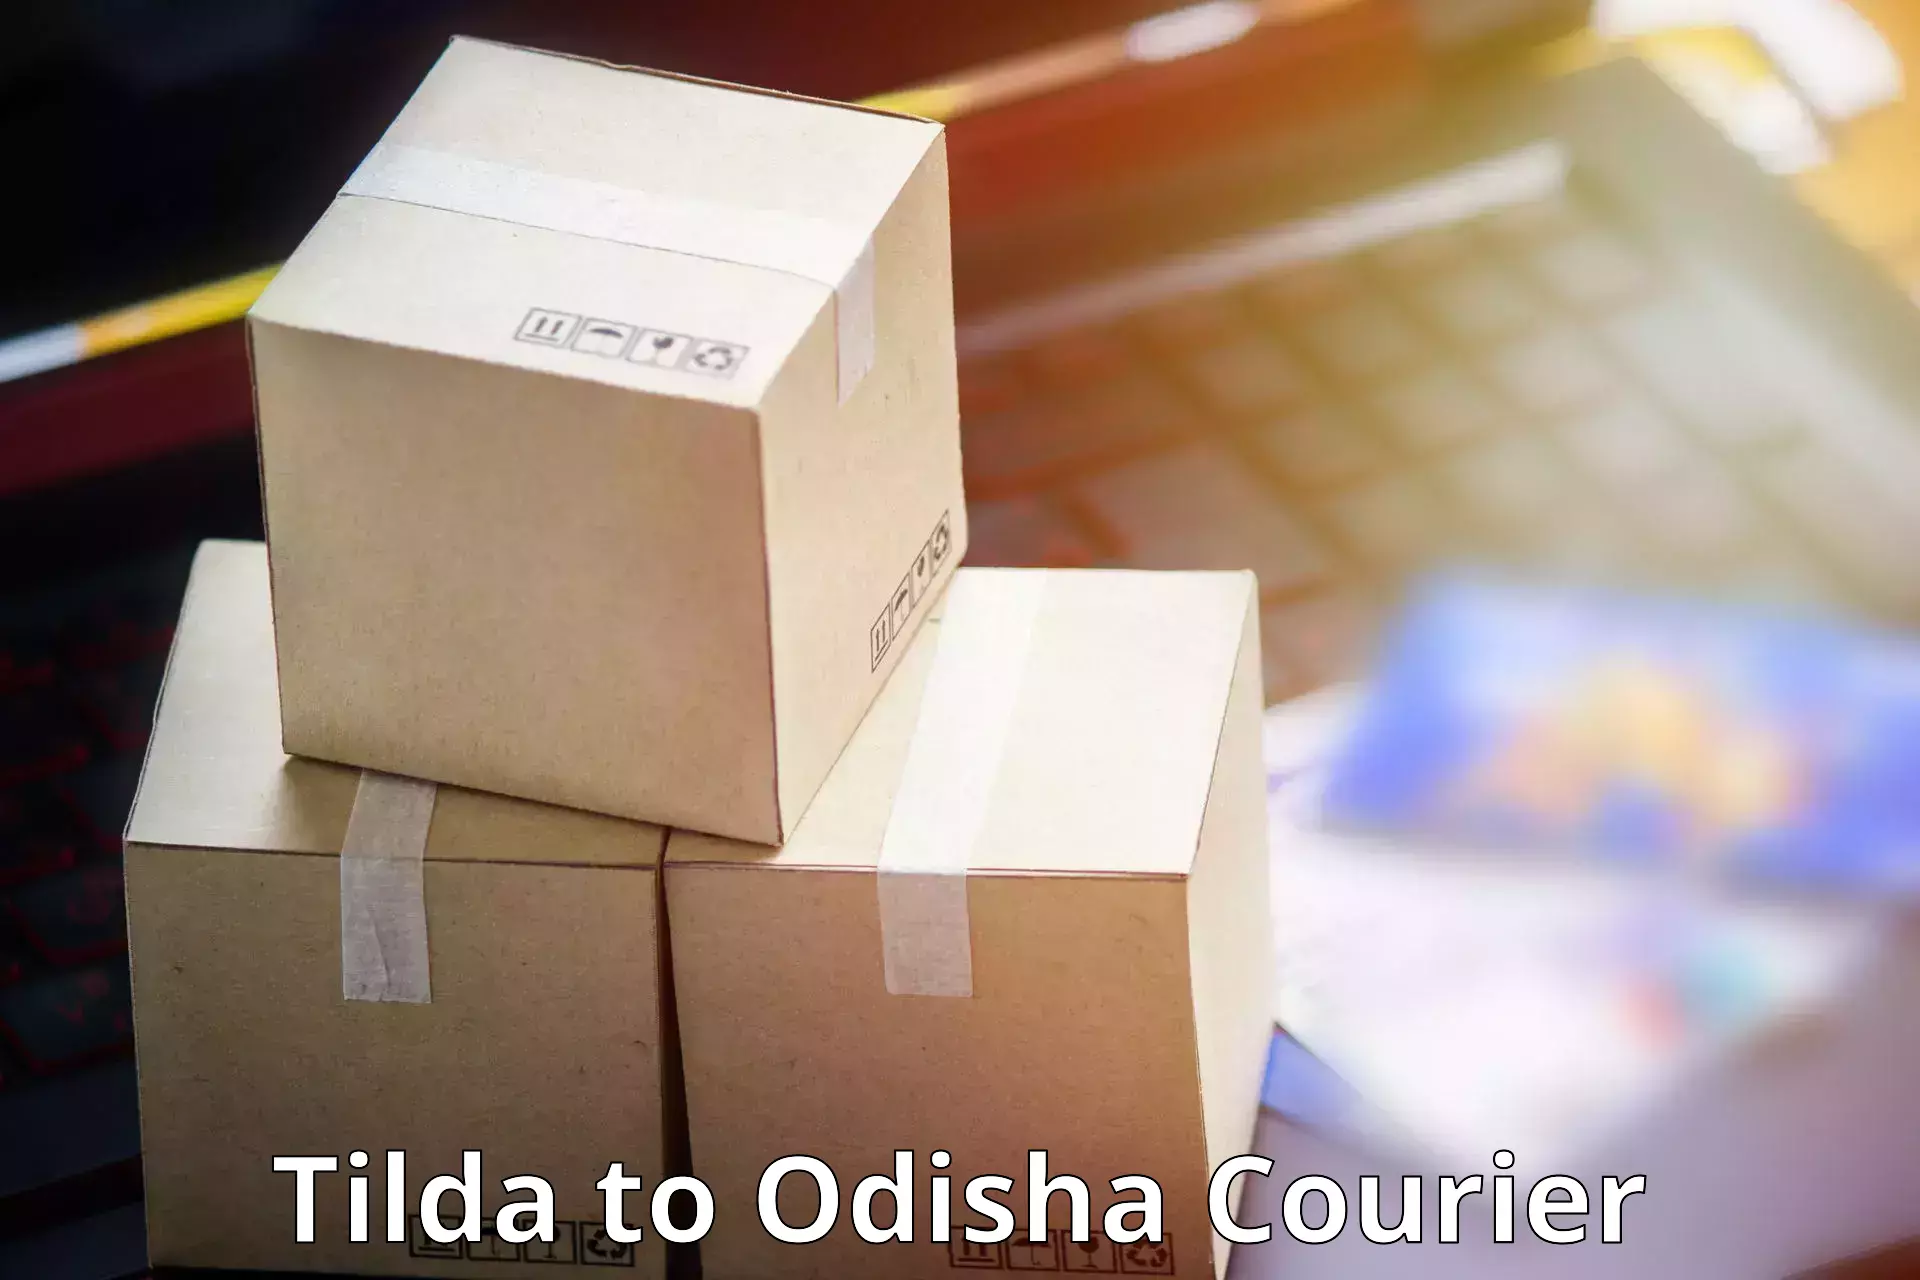 Customer-centric shipping Tilda to Nayagarh